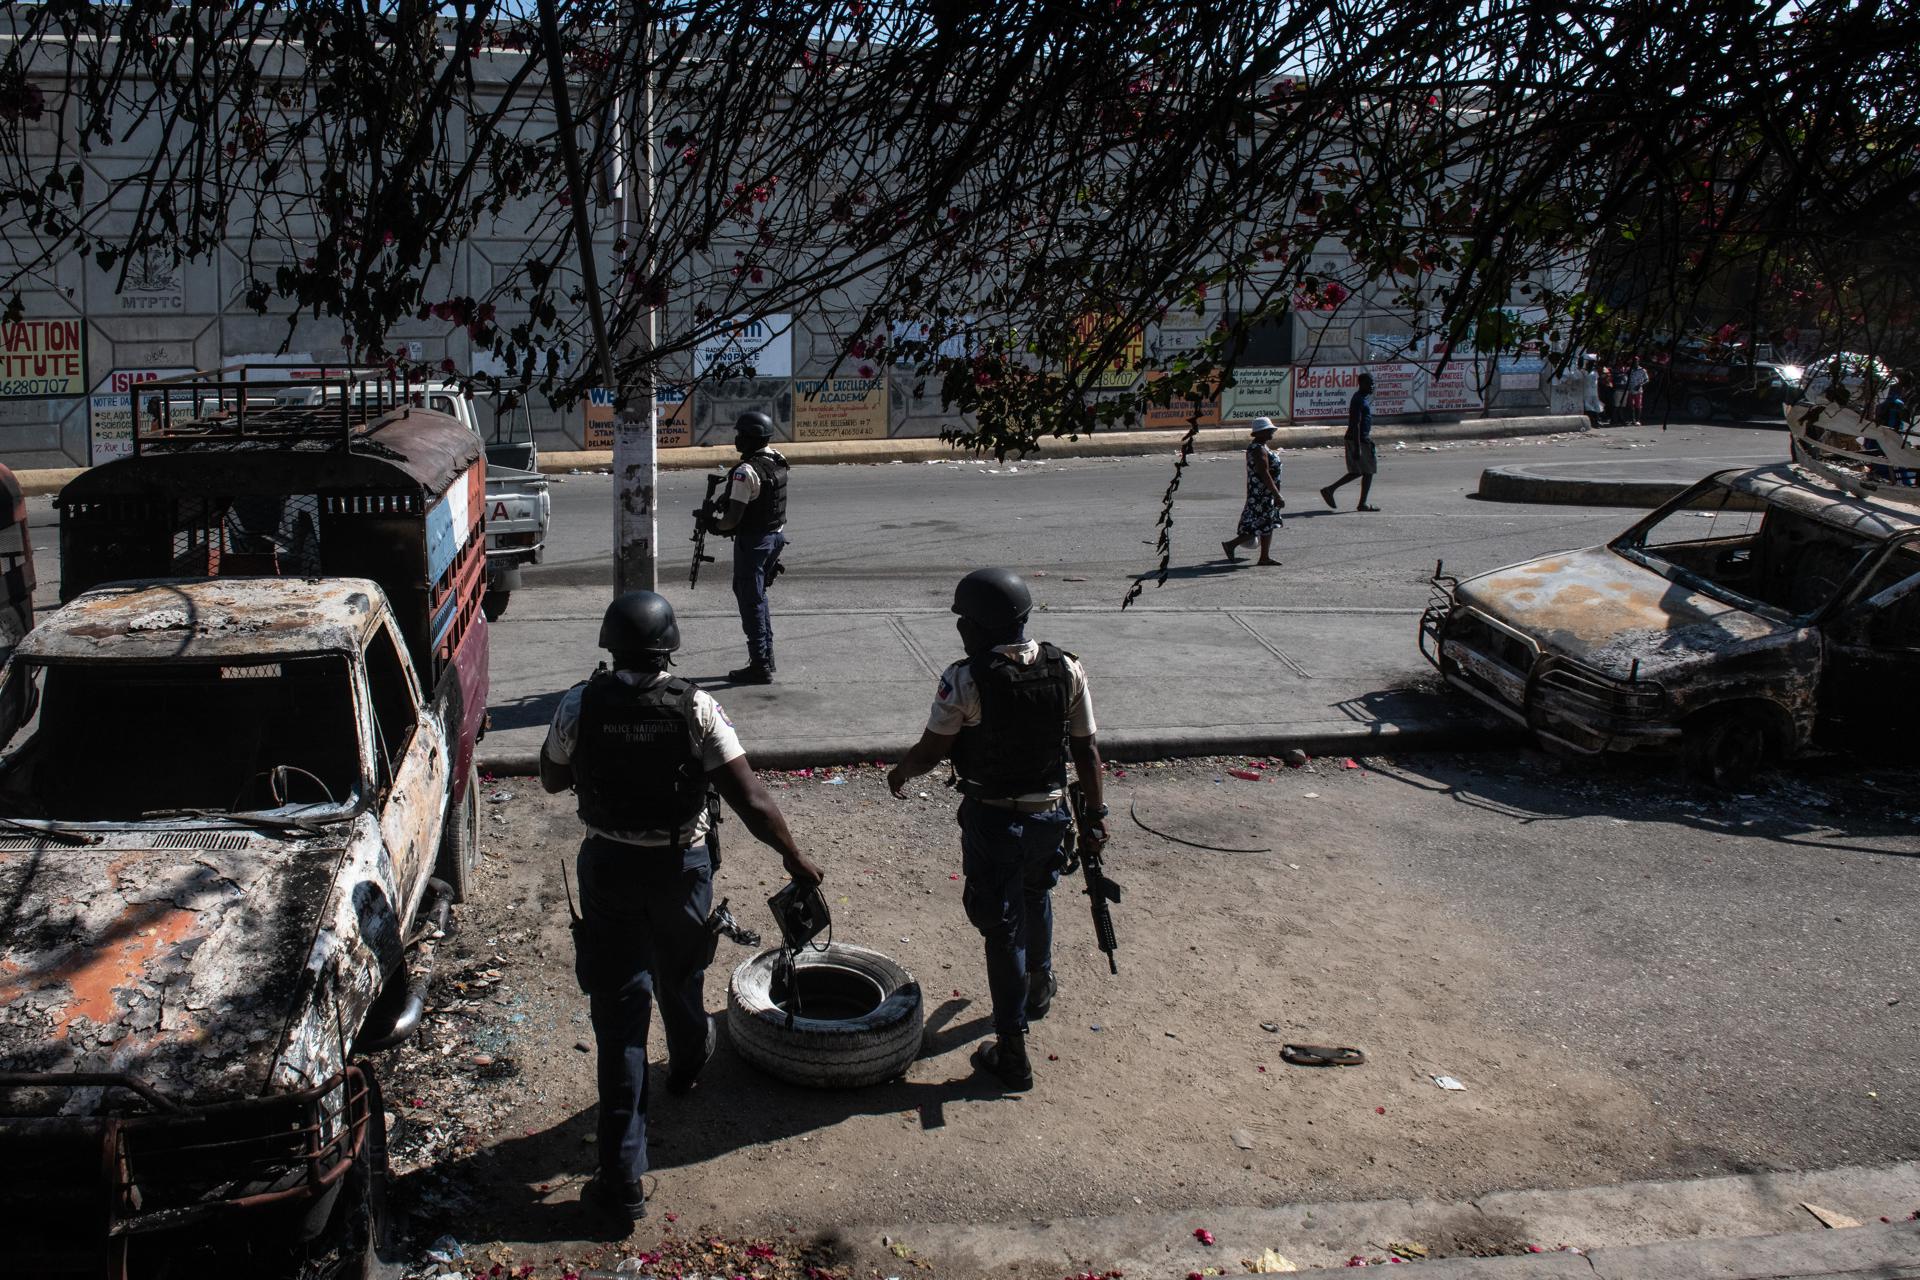 Haití sumergido en la violencia, mientras el primer ministro sigue en paradero desconocido